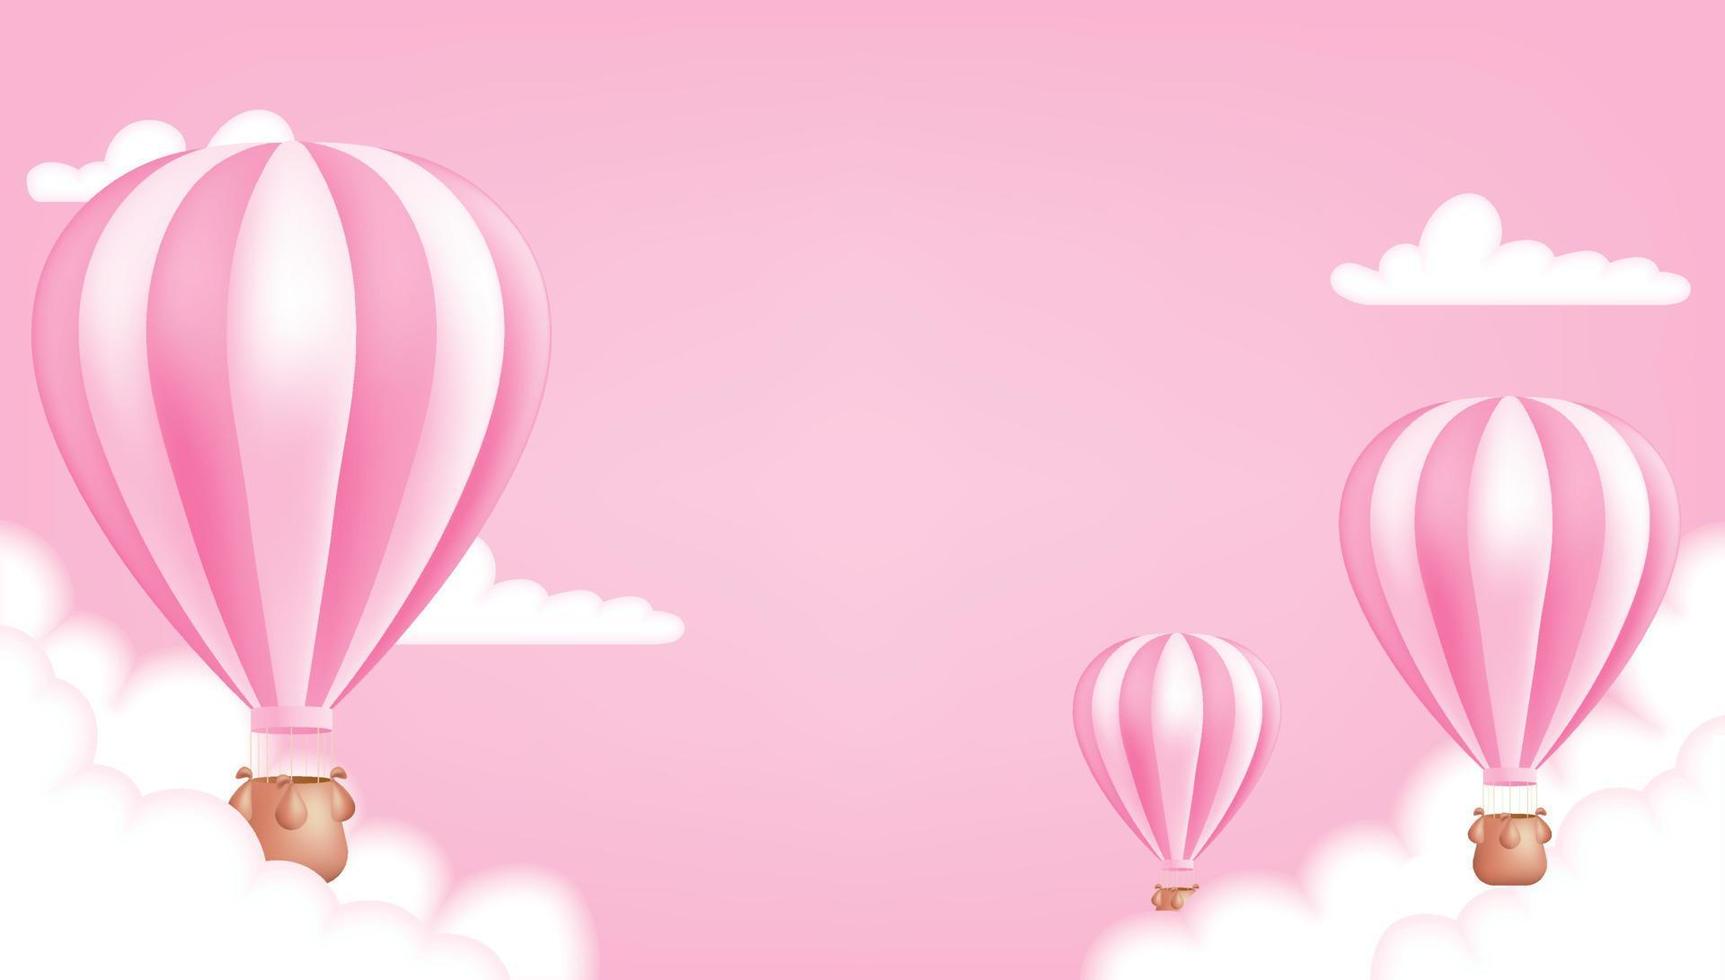 un caliente aire globo en el rosado antecedentes. linda pastel niños ilustración Perfecto para un póster, invitación o tarjeta. vector ilustración modelo para cumpleaños aniversarios, y bebé duchas